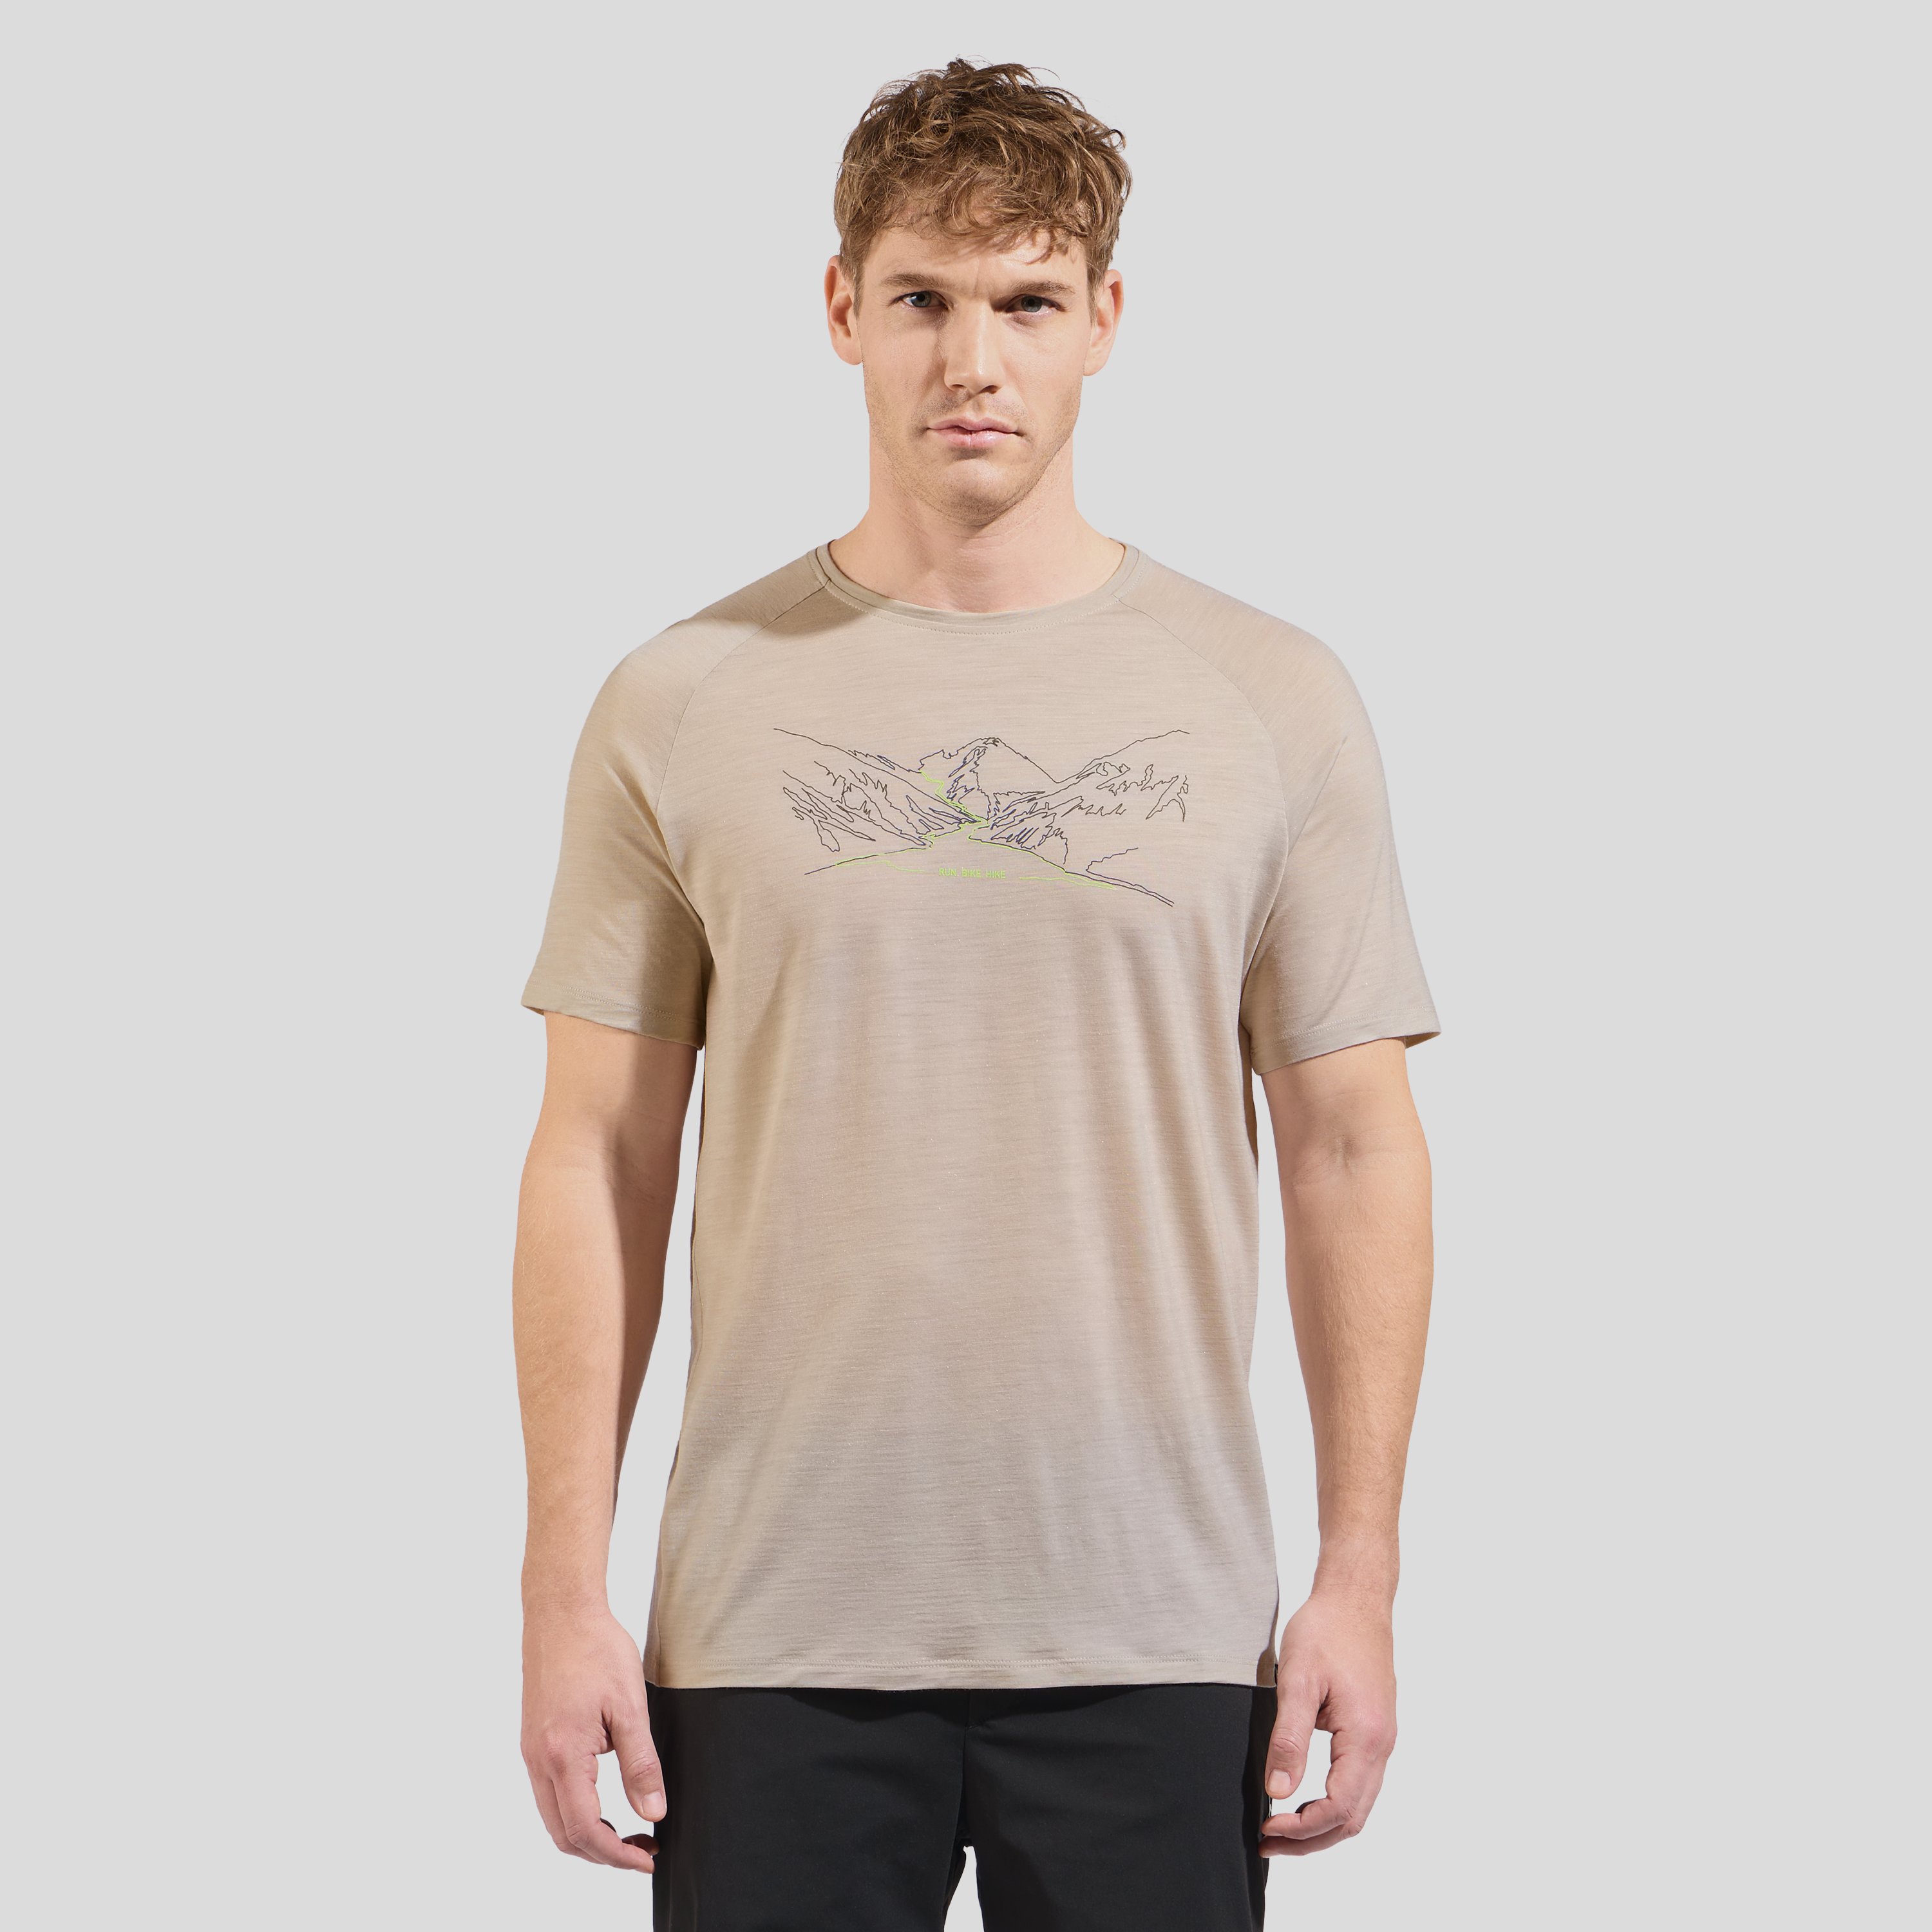 Odlo T-shirt à inscription Run Bike Hike Ascent Performance Wool 130 pour homme, XXL, gris clair